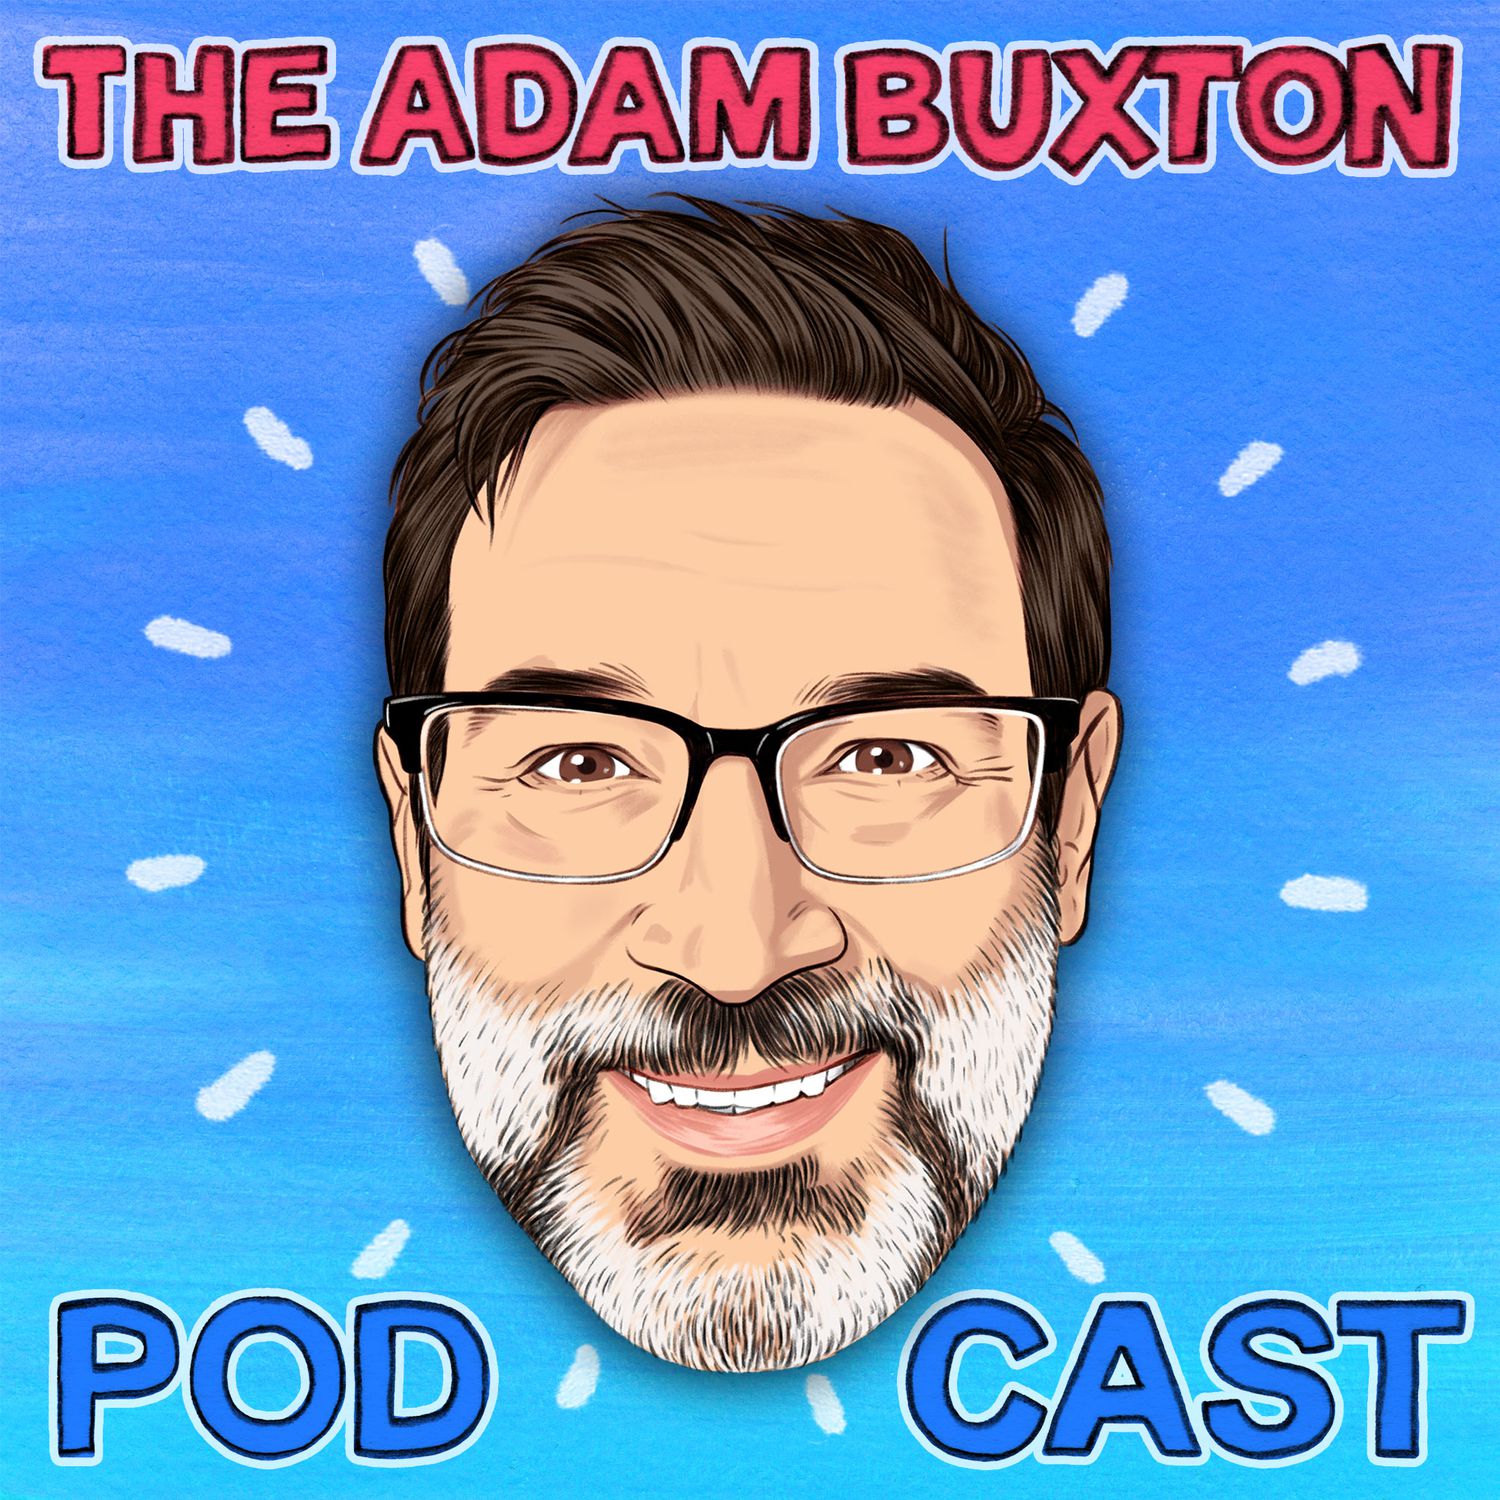 THE ADAM BUXTON PODCAST on acast